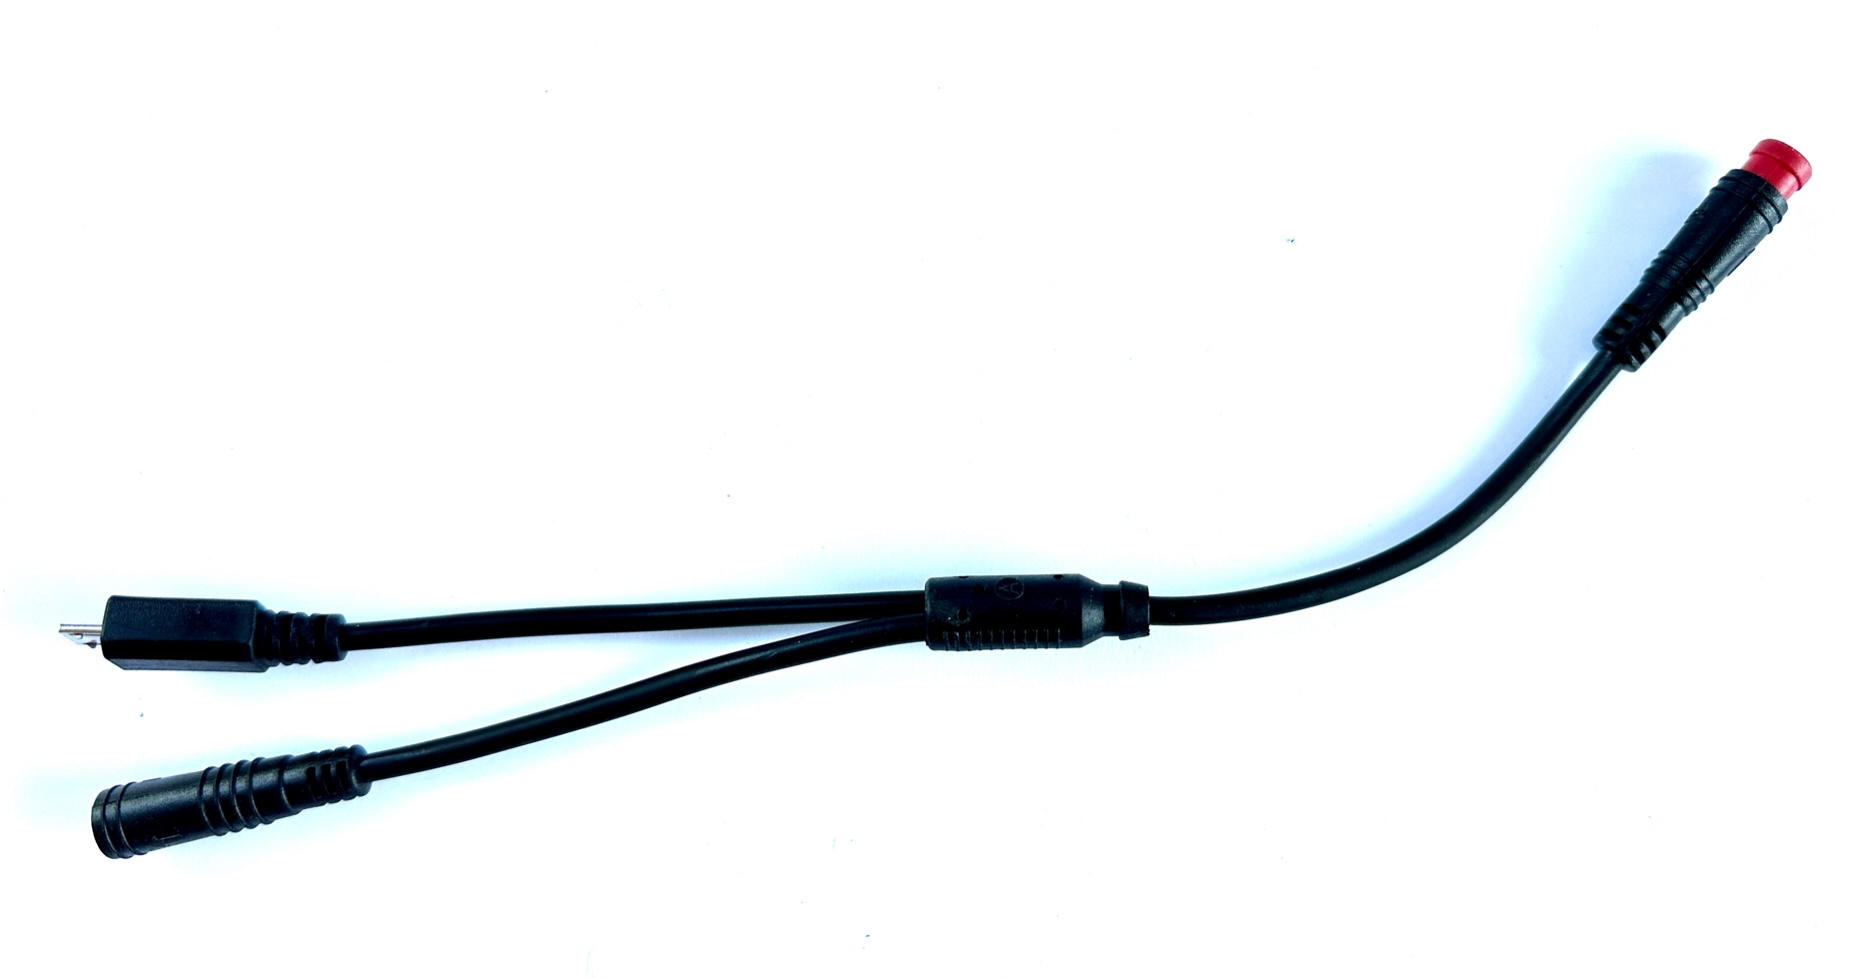 HIGO / Julet Câble Y 17,5 cm pour Ebike, 2 PIN rouge sur 2 PIN rouge et USB micro B